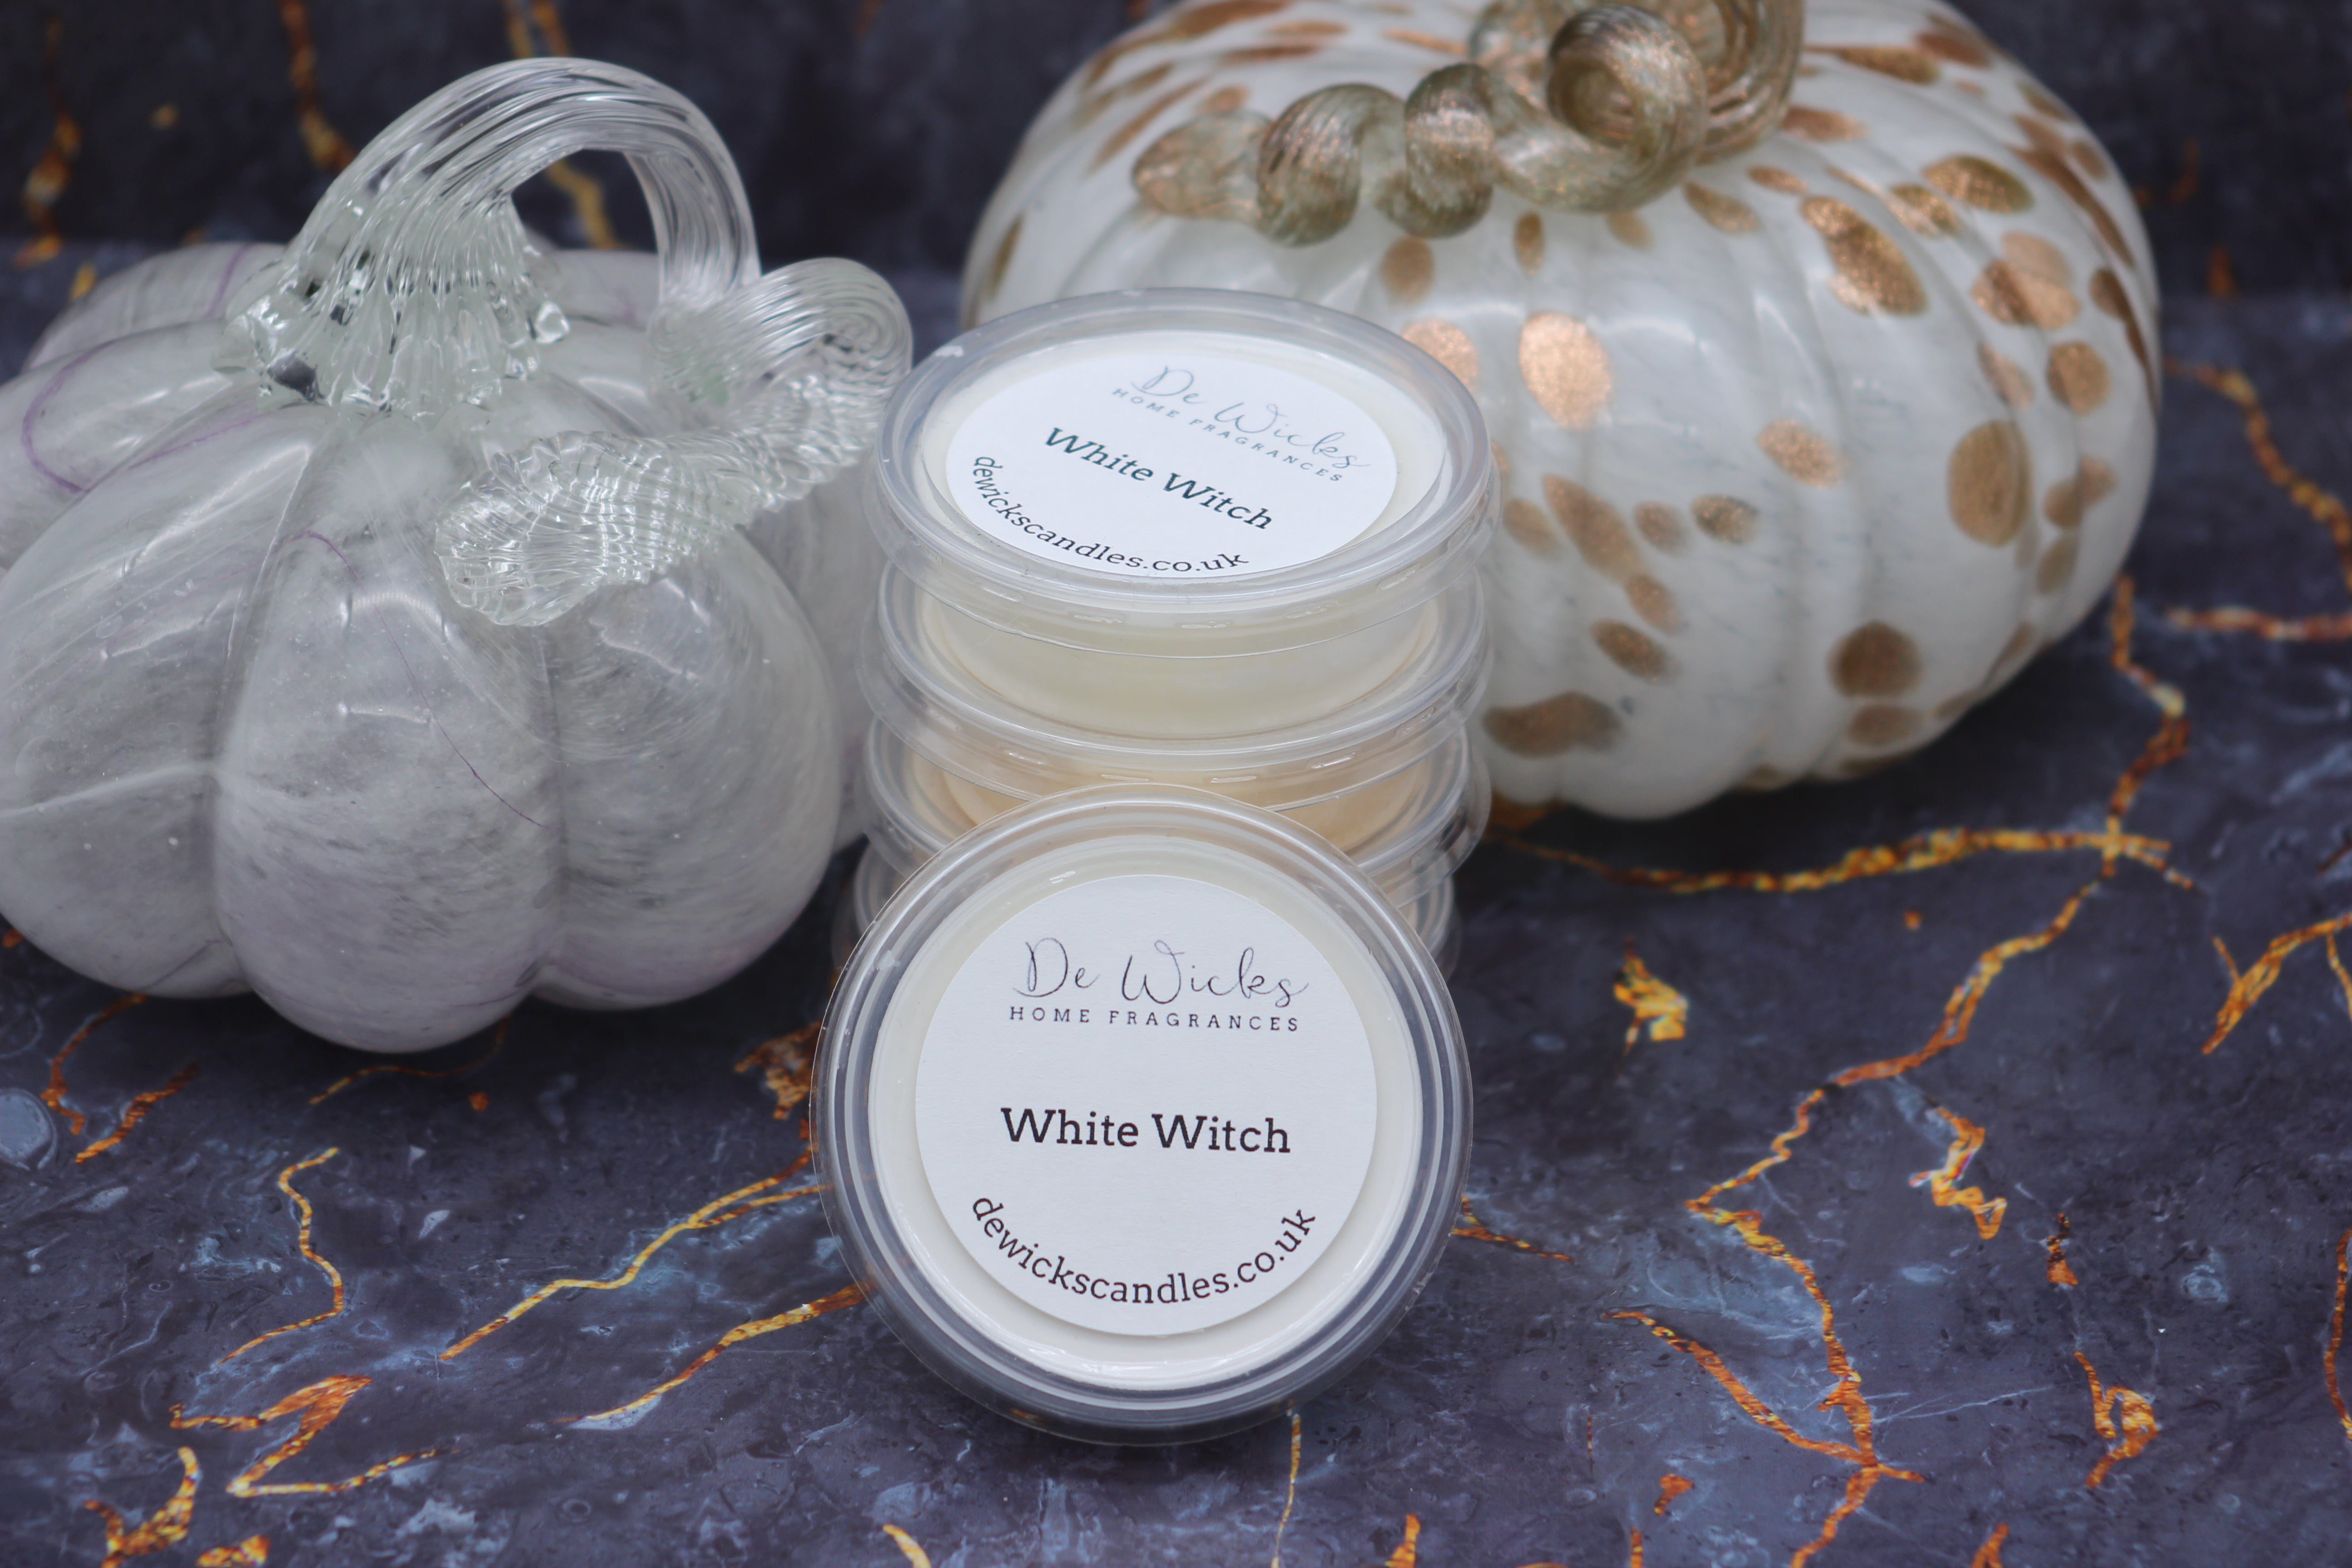 White Witch - De Wicks Home Fragrances